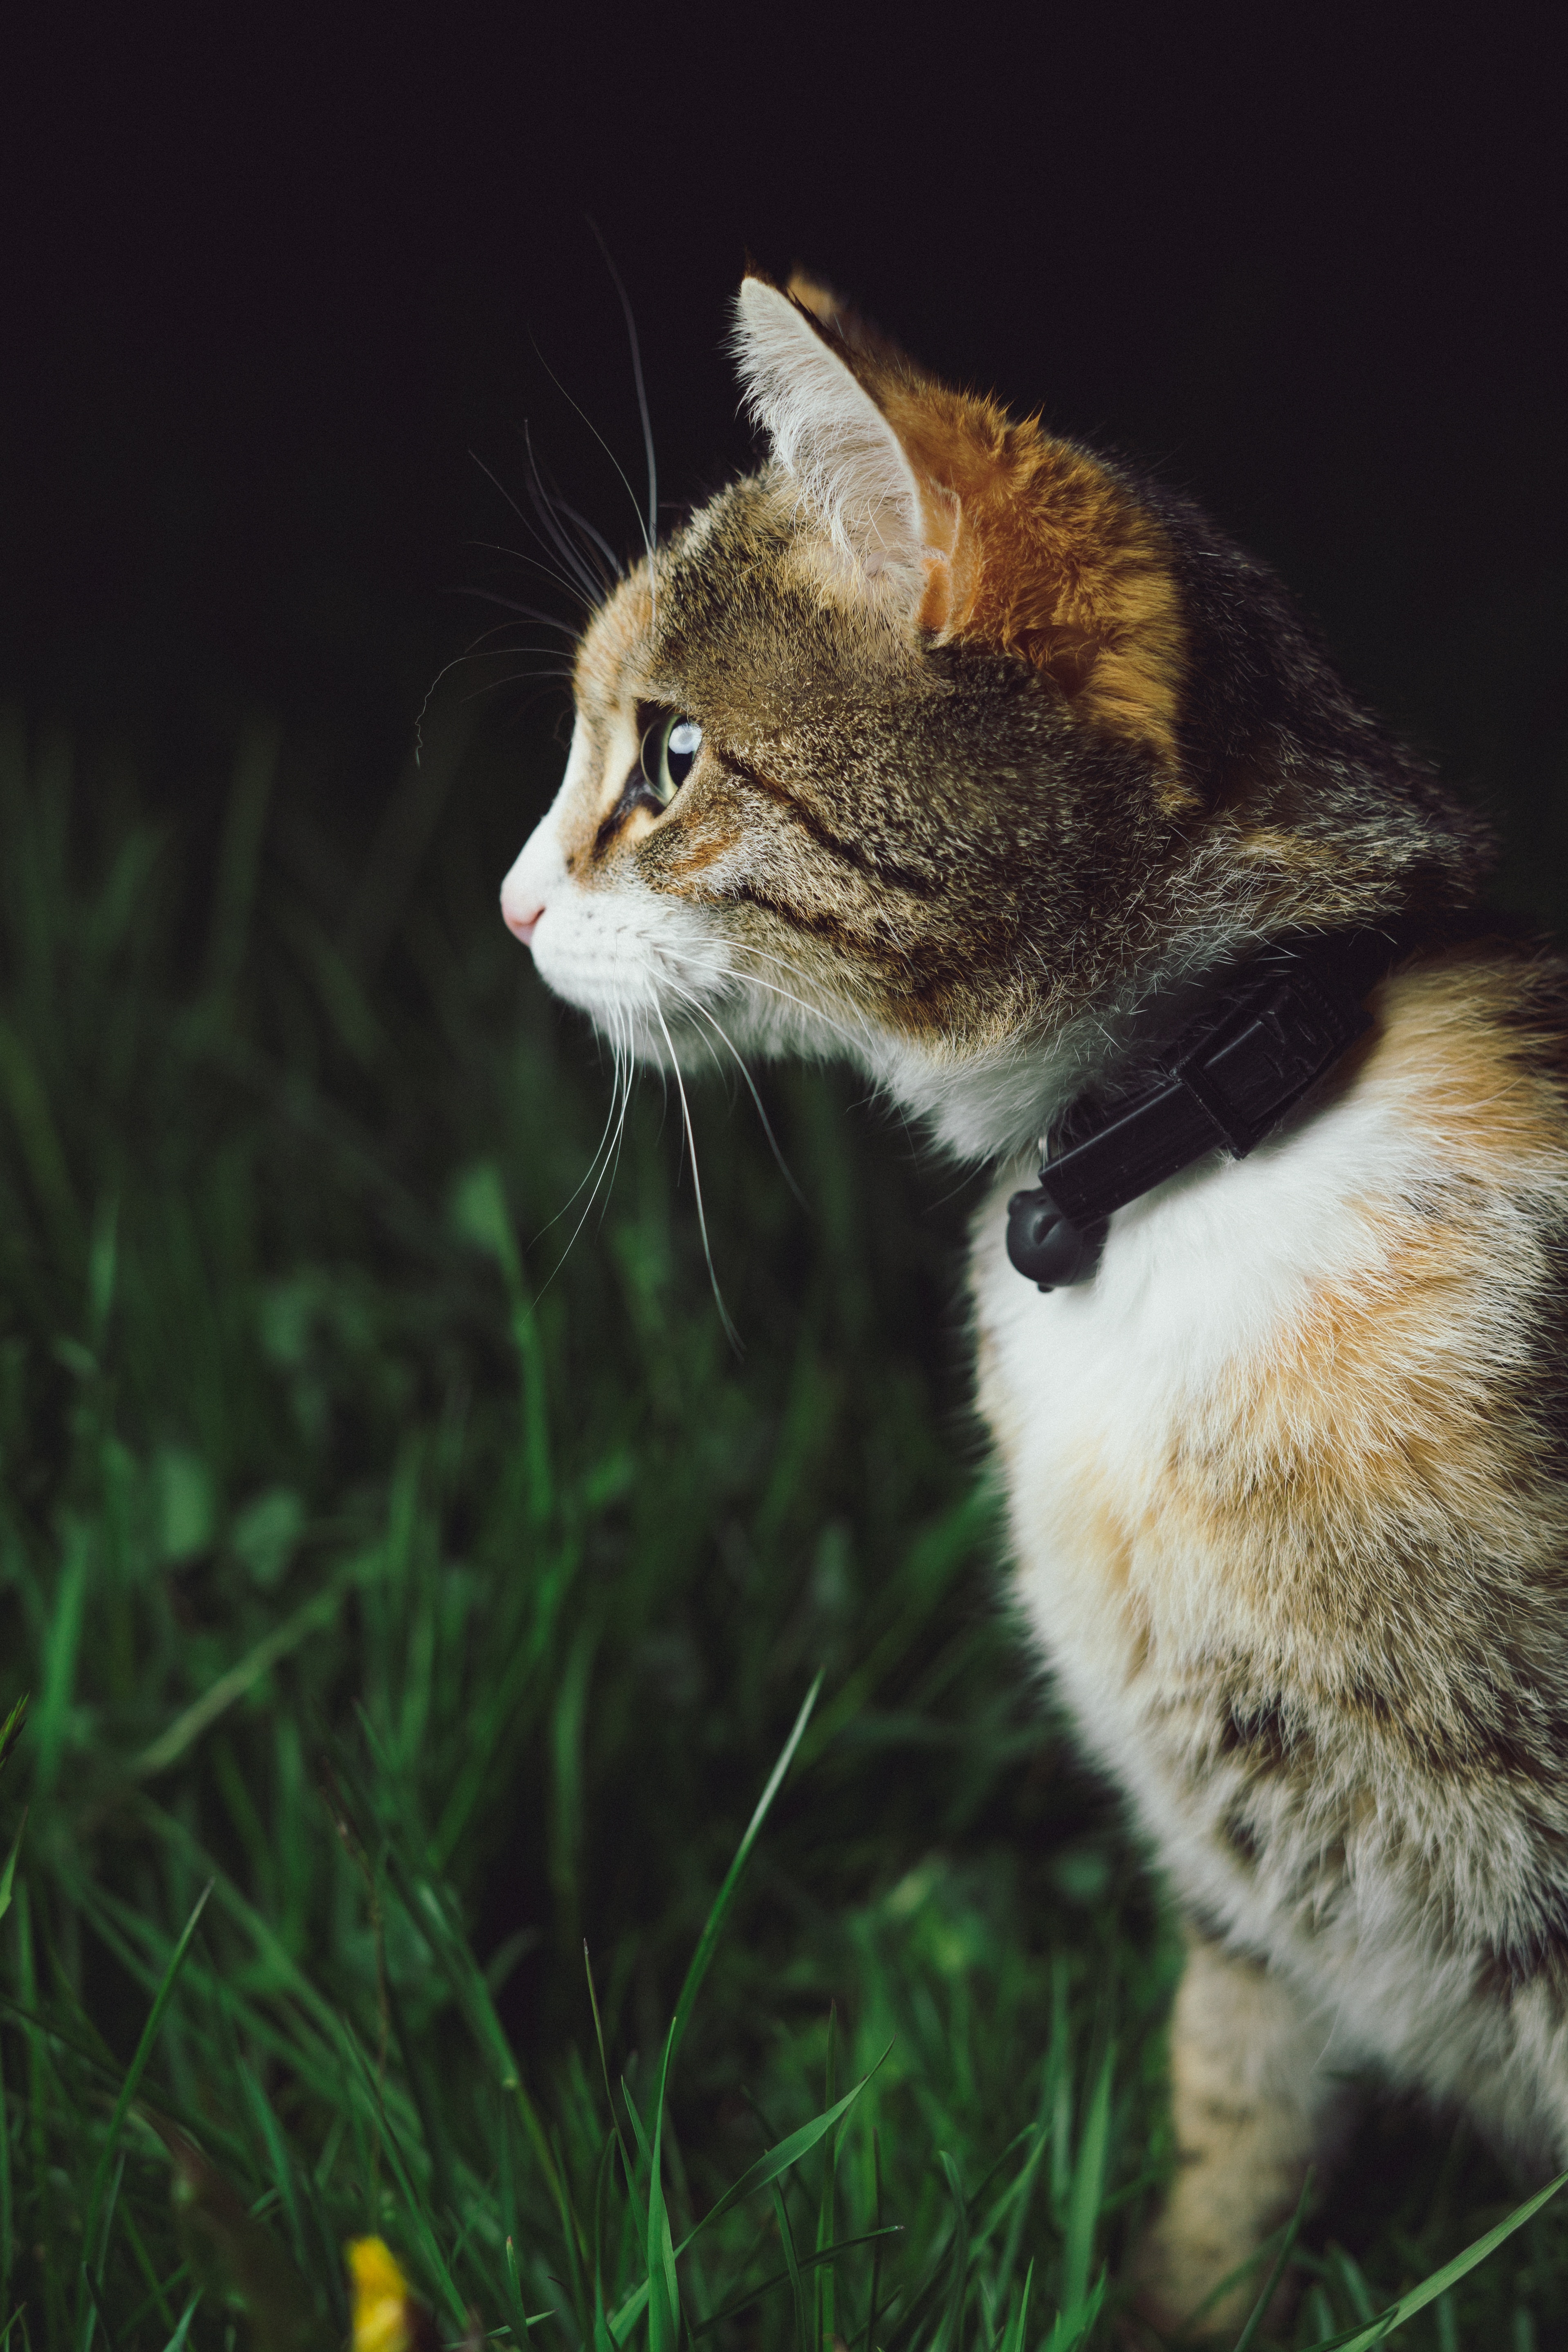 Młody kot w trawie. Posiada obrożę z dzwoneczkiem. Dzwoneczki są źródłem frustracji dla kotów, przeszkadzają im, a sama obroża na kocie wychodzącym może być powodem zawieszenia się na niej kota i uduszenia.